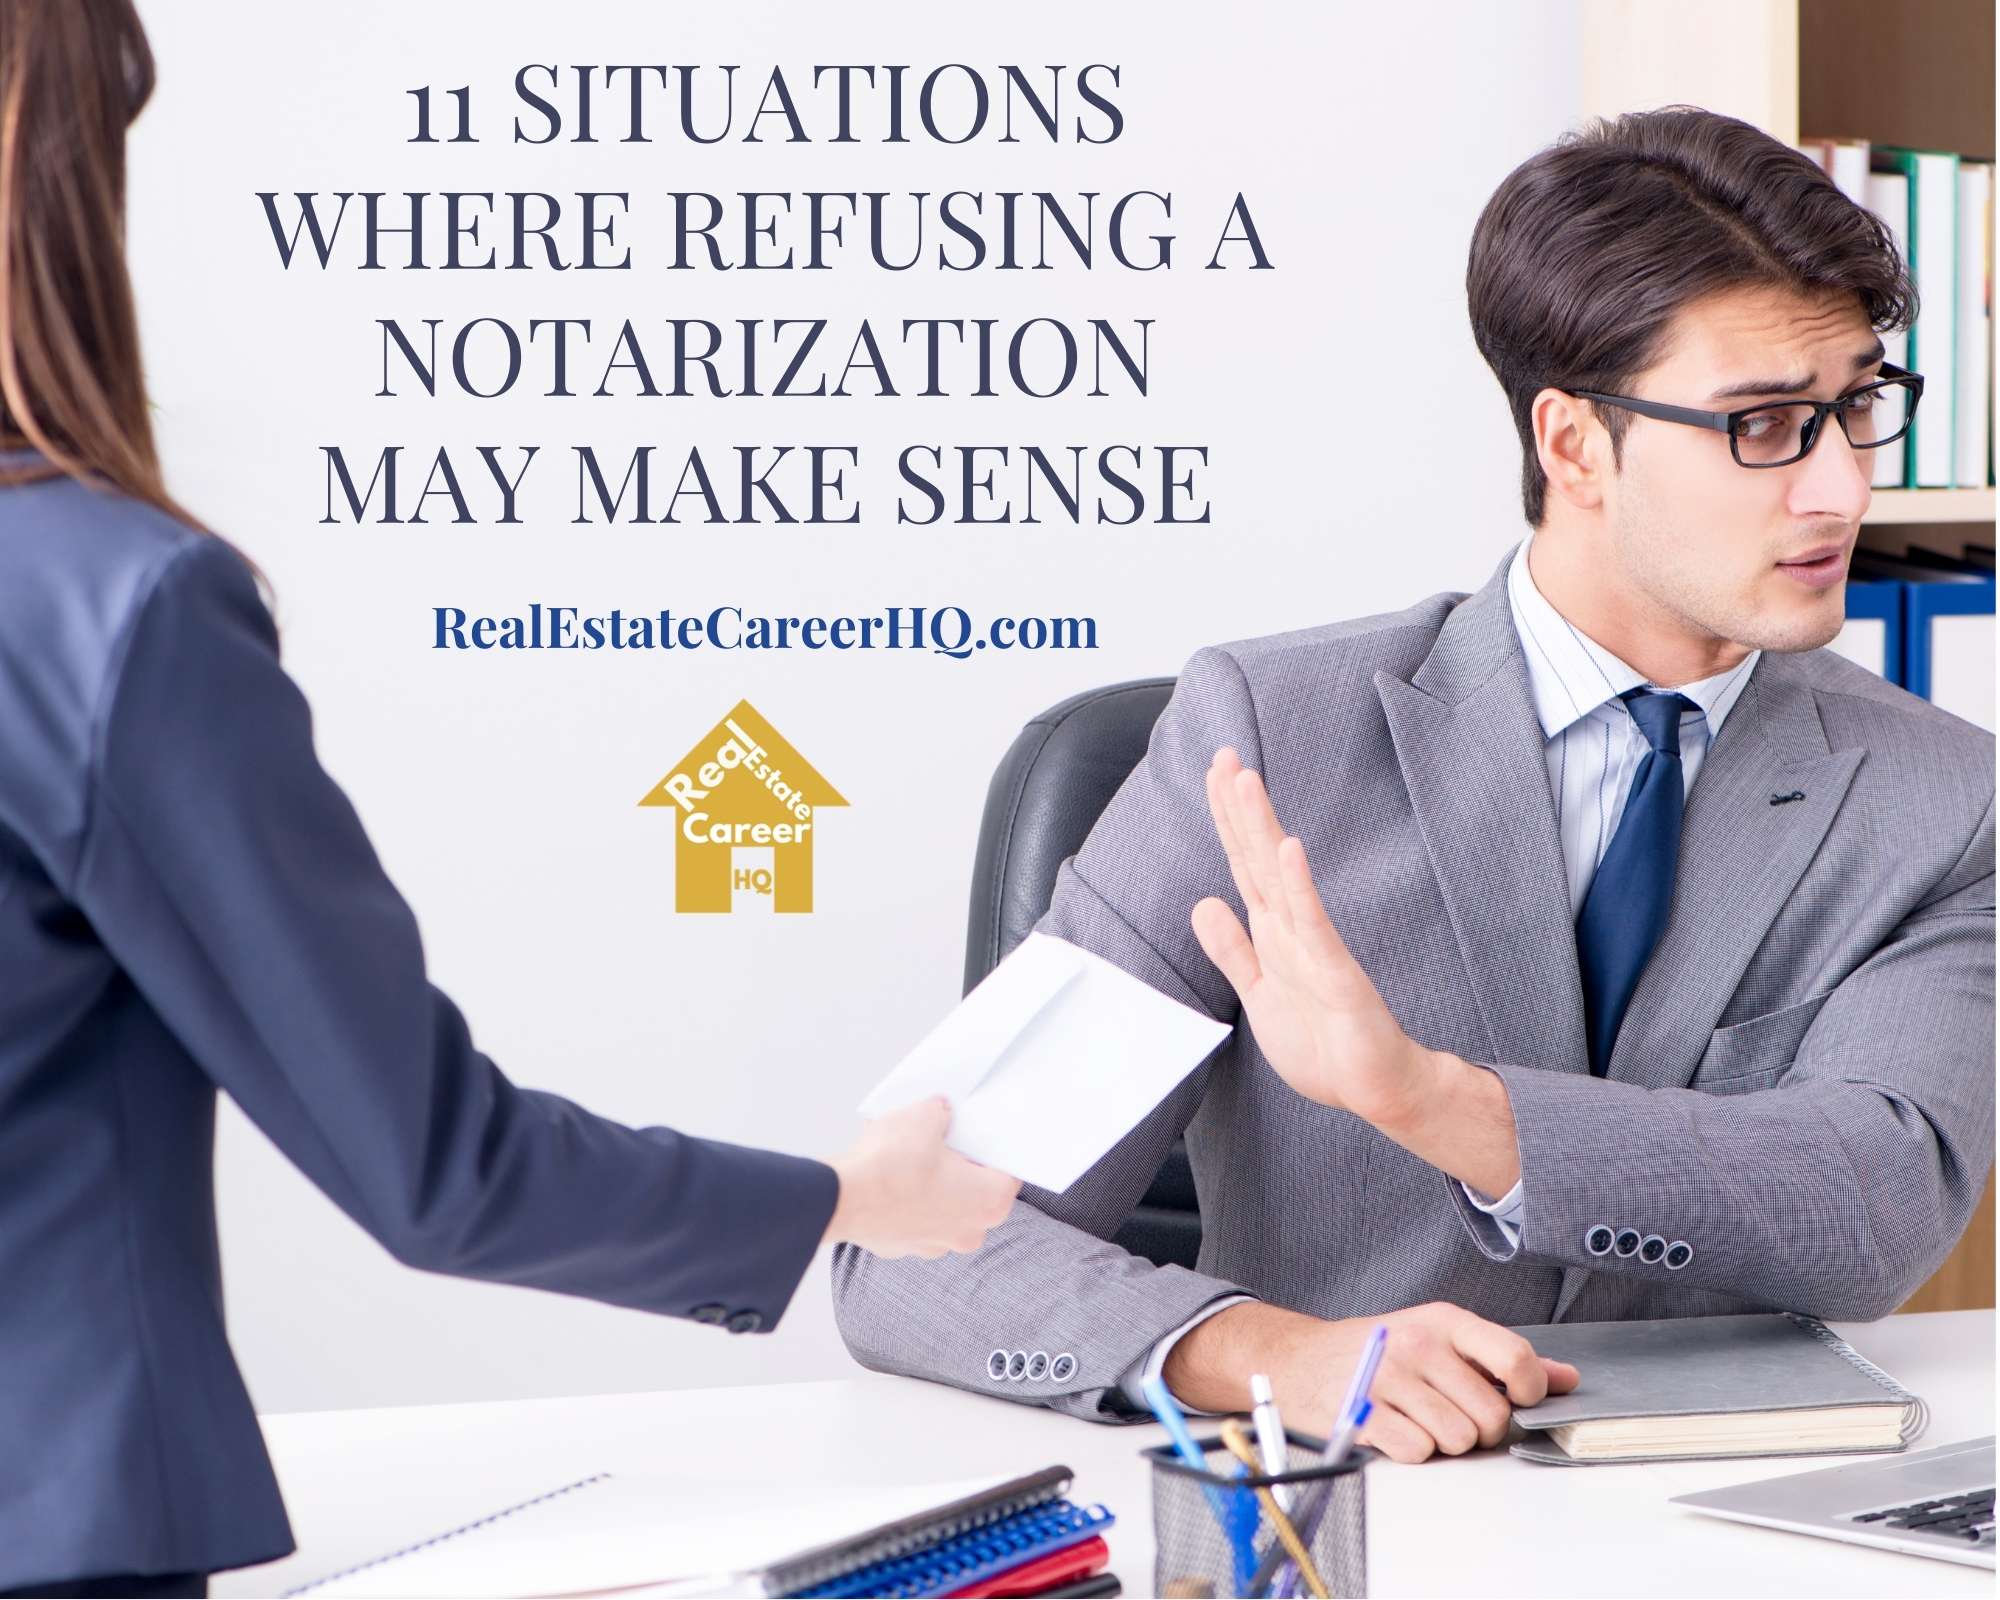 11 Situations where Refusing a Notarization may Make Sense